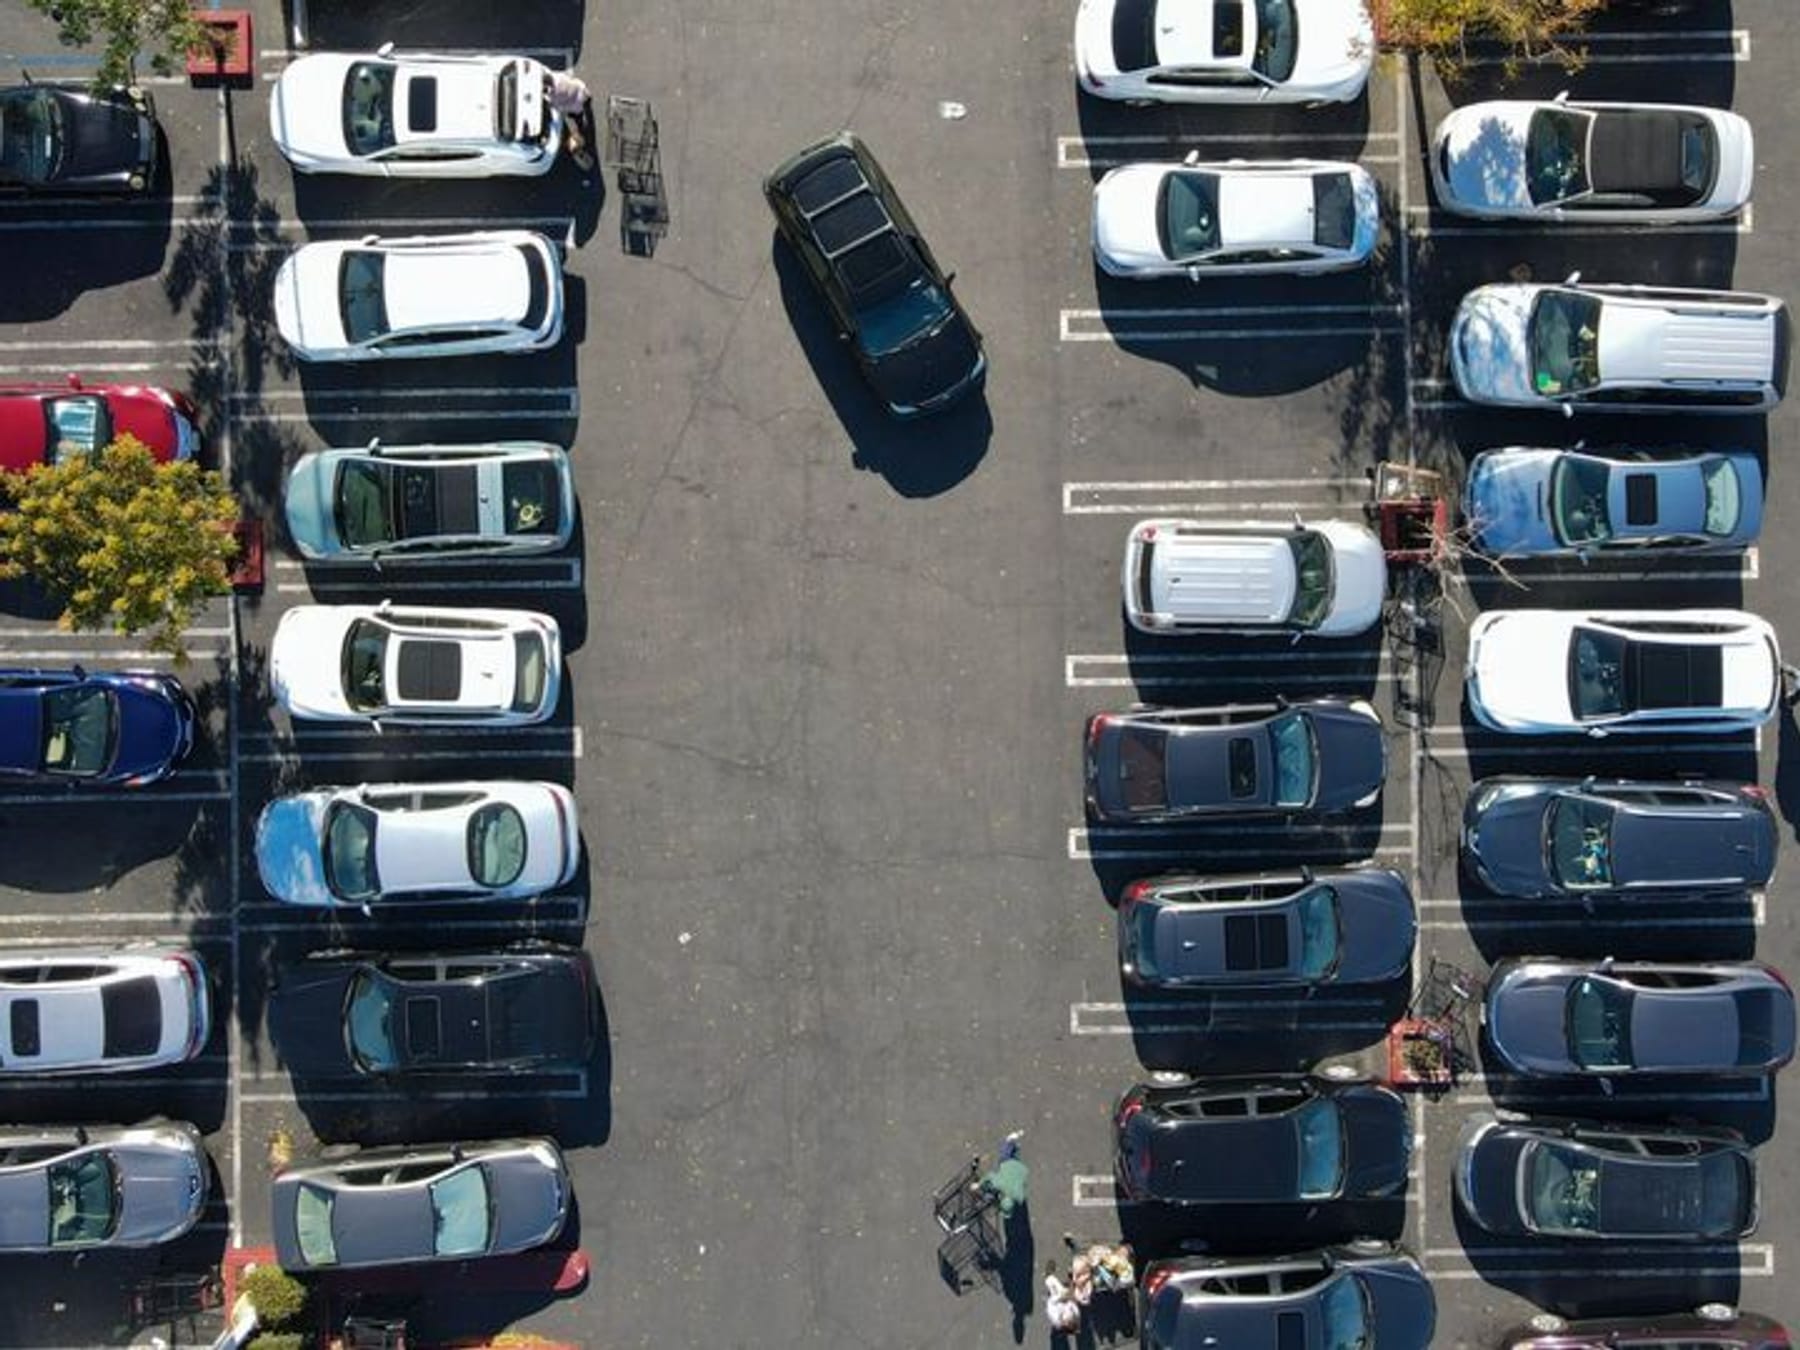 Strafzettel fürs Parken vorm Supermarkt – muss man das Knöllchen bezahlen?